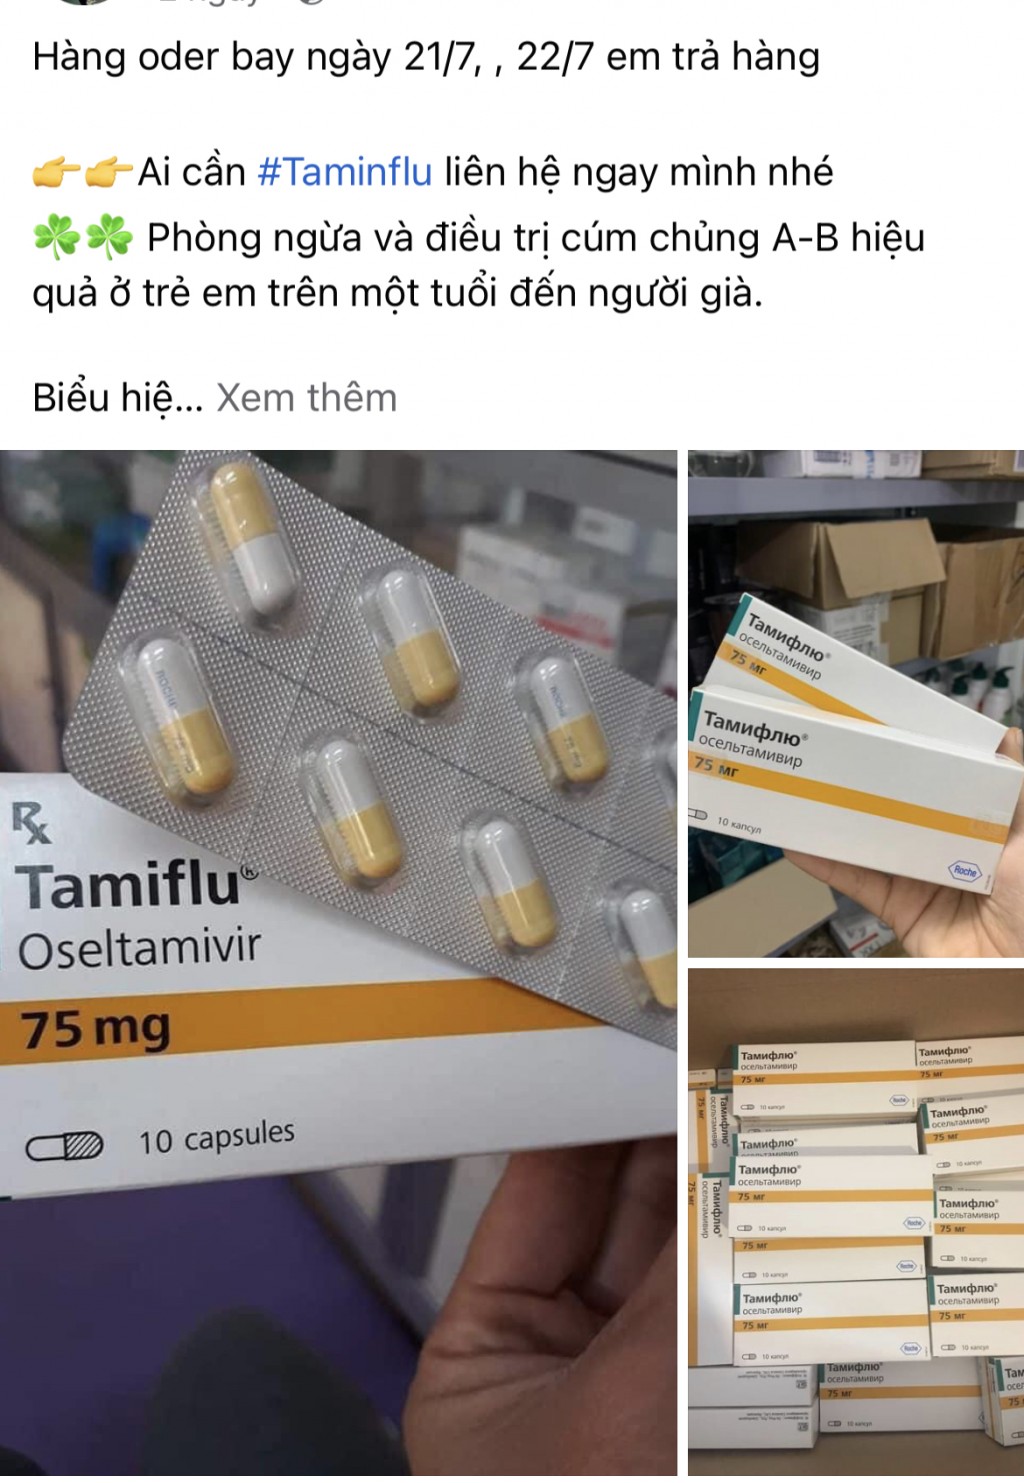 Cảnh báo dịch cúm A có gia tăng, người dân không tự ý dùng thuốc Tamiflu